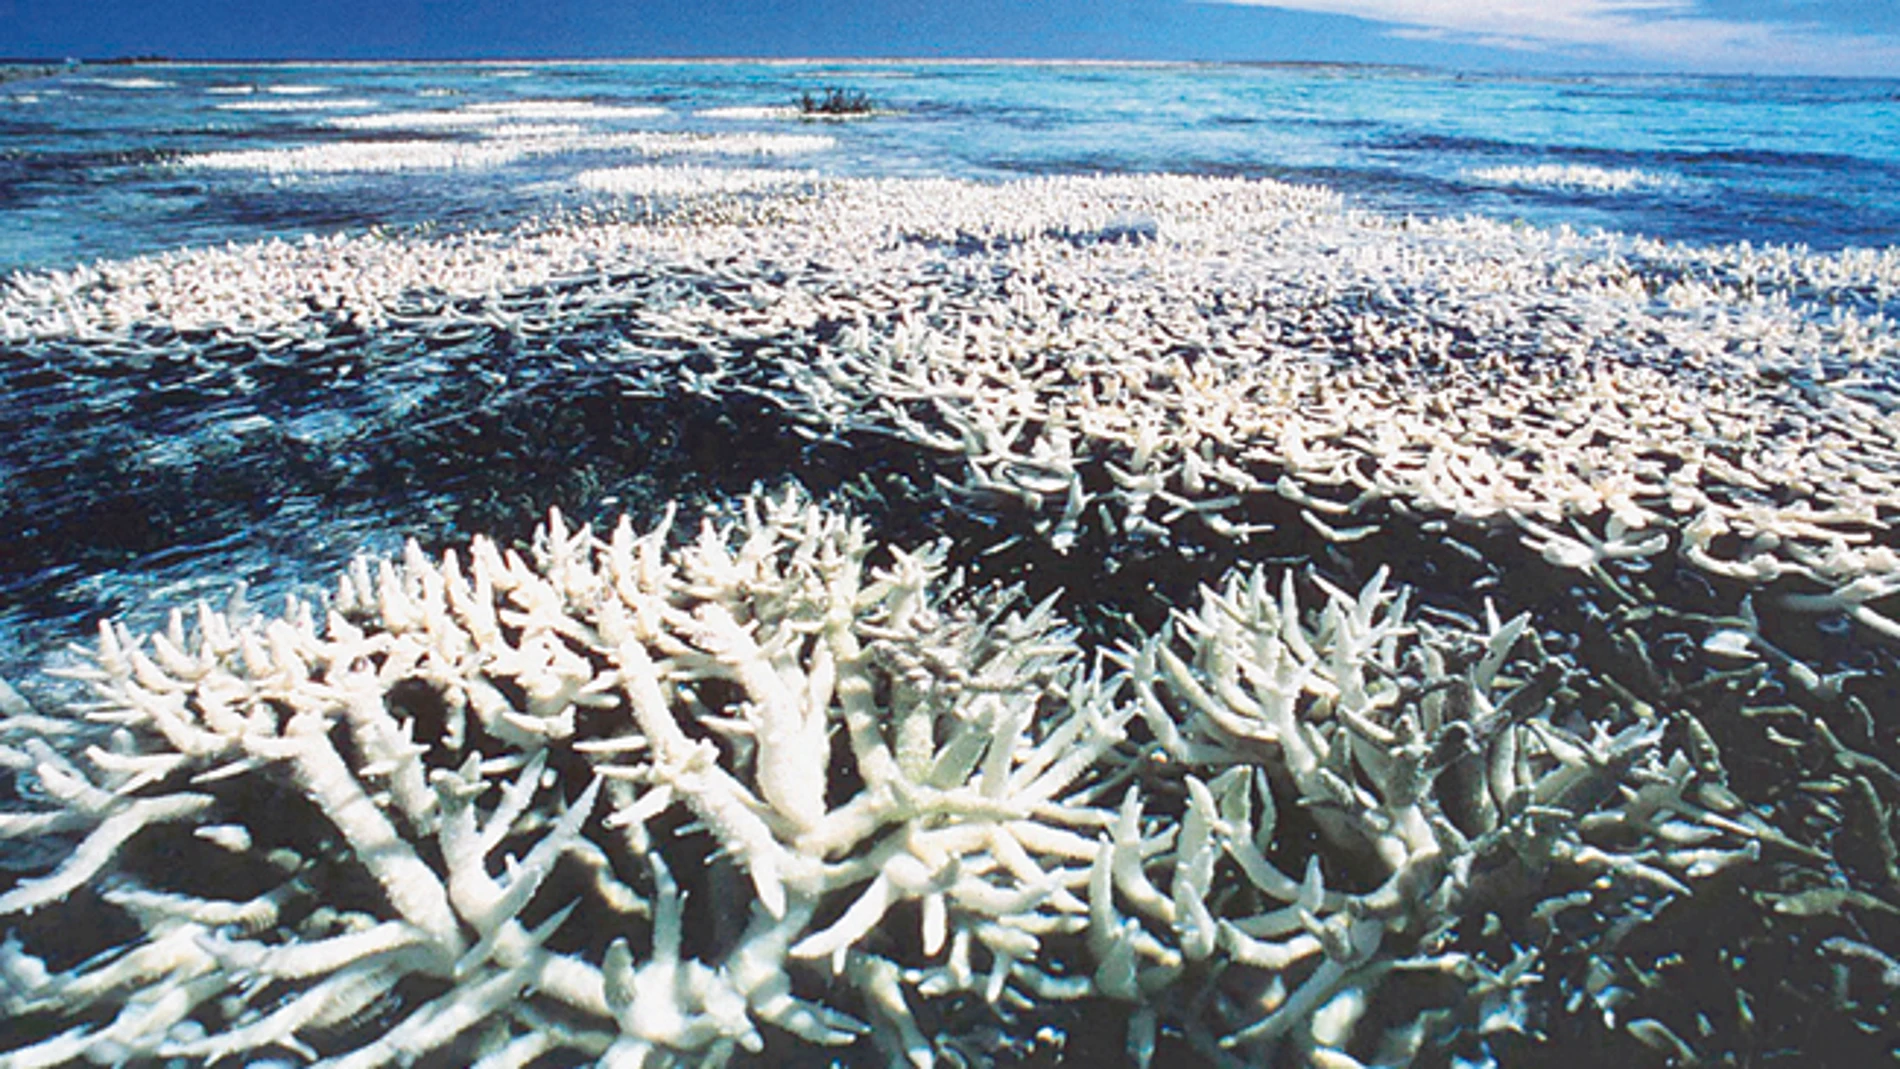 La Gran Barrera de Coral australiana ha perdido la mitad de su extensión desde 1985